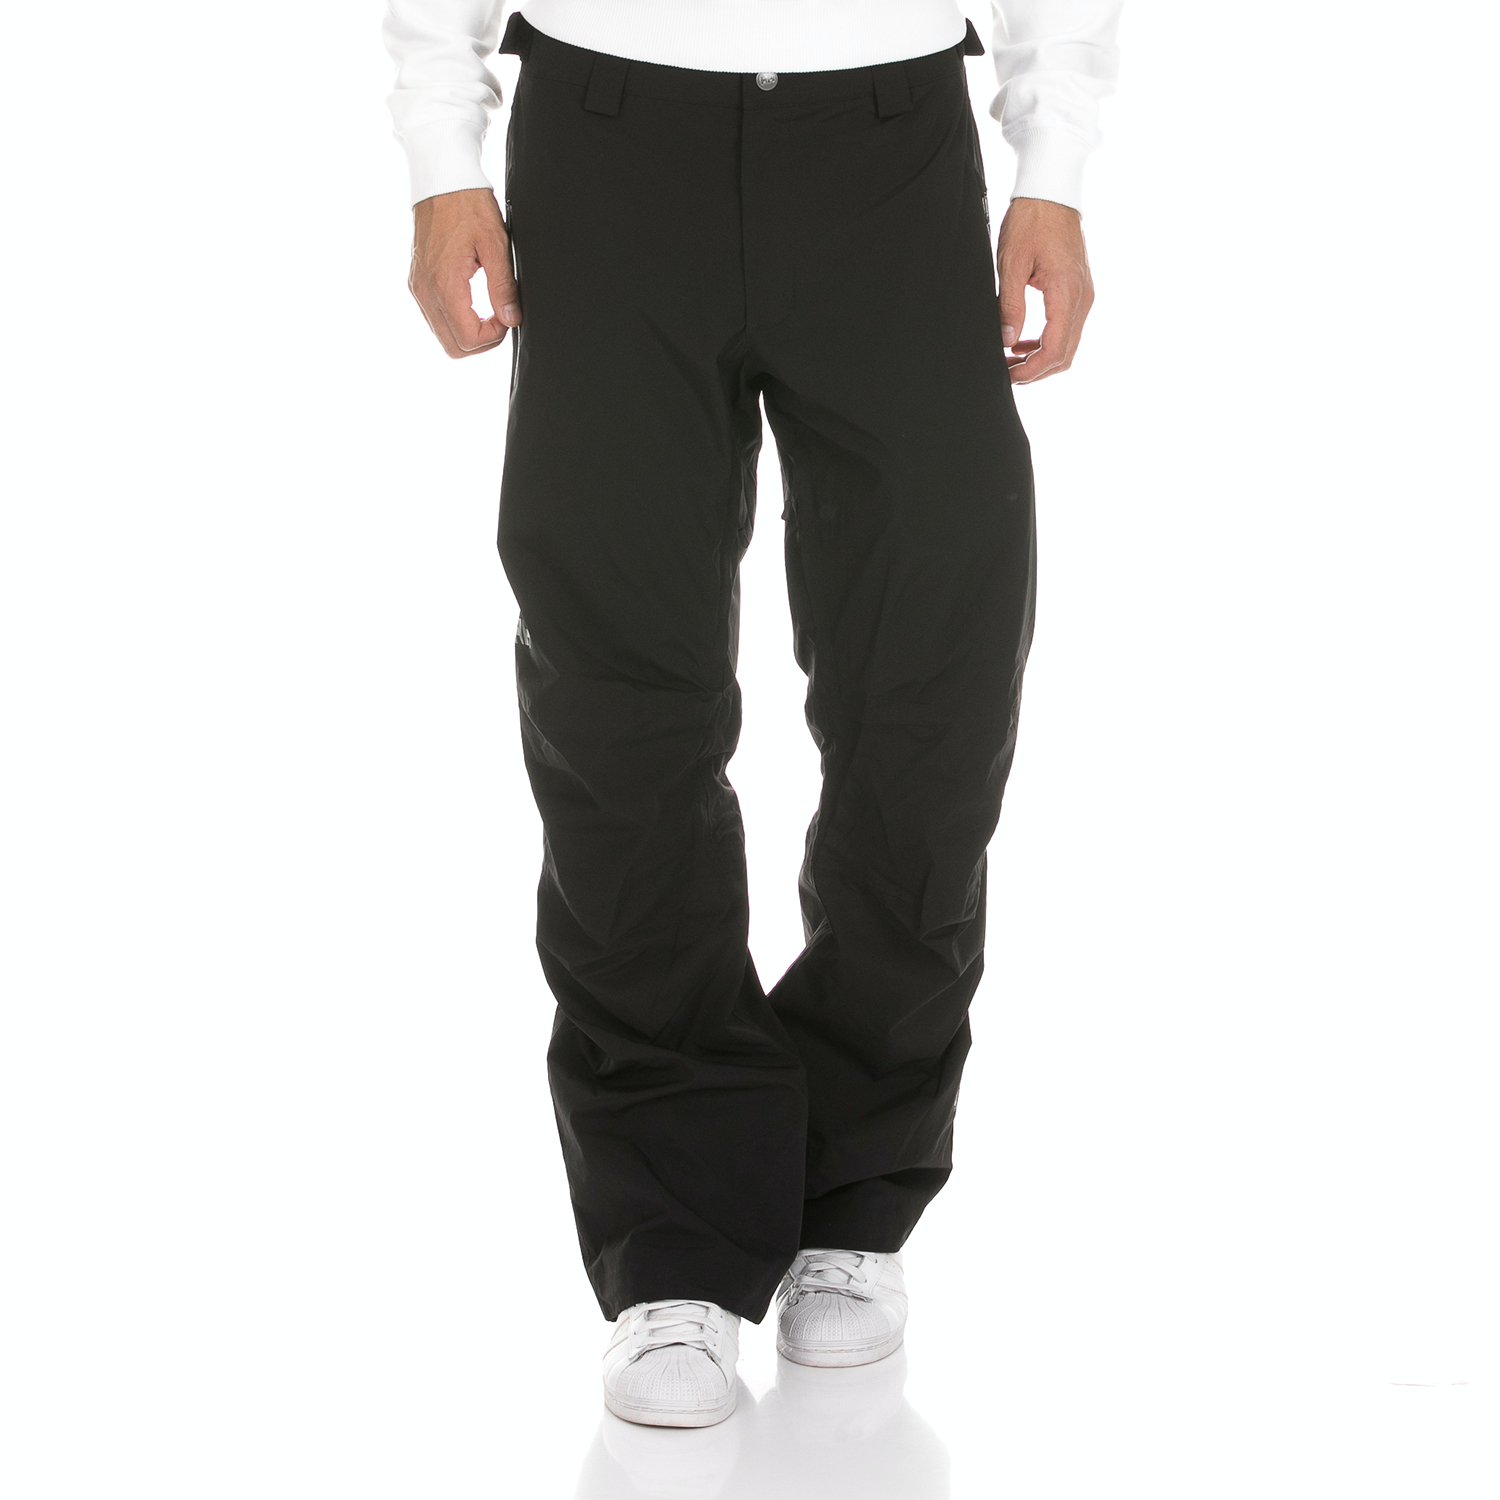 Ανδρικά/Ρούχα/Αθλητικά/Φόρμες HELLY HANSEN - Ανδρικό αθλητικό παντελόνι HELLY HANSEN LEGENDARY μαύρο